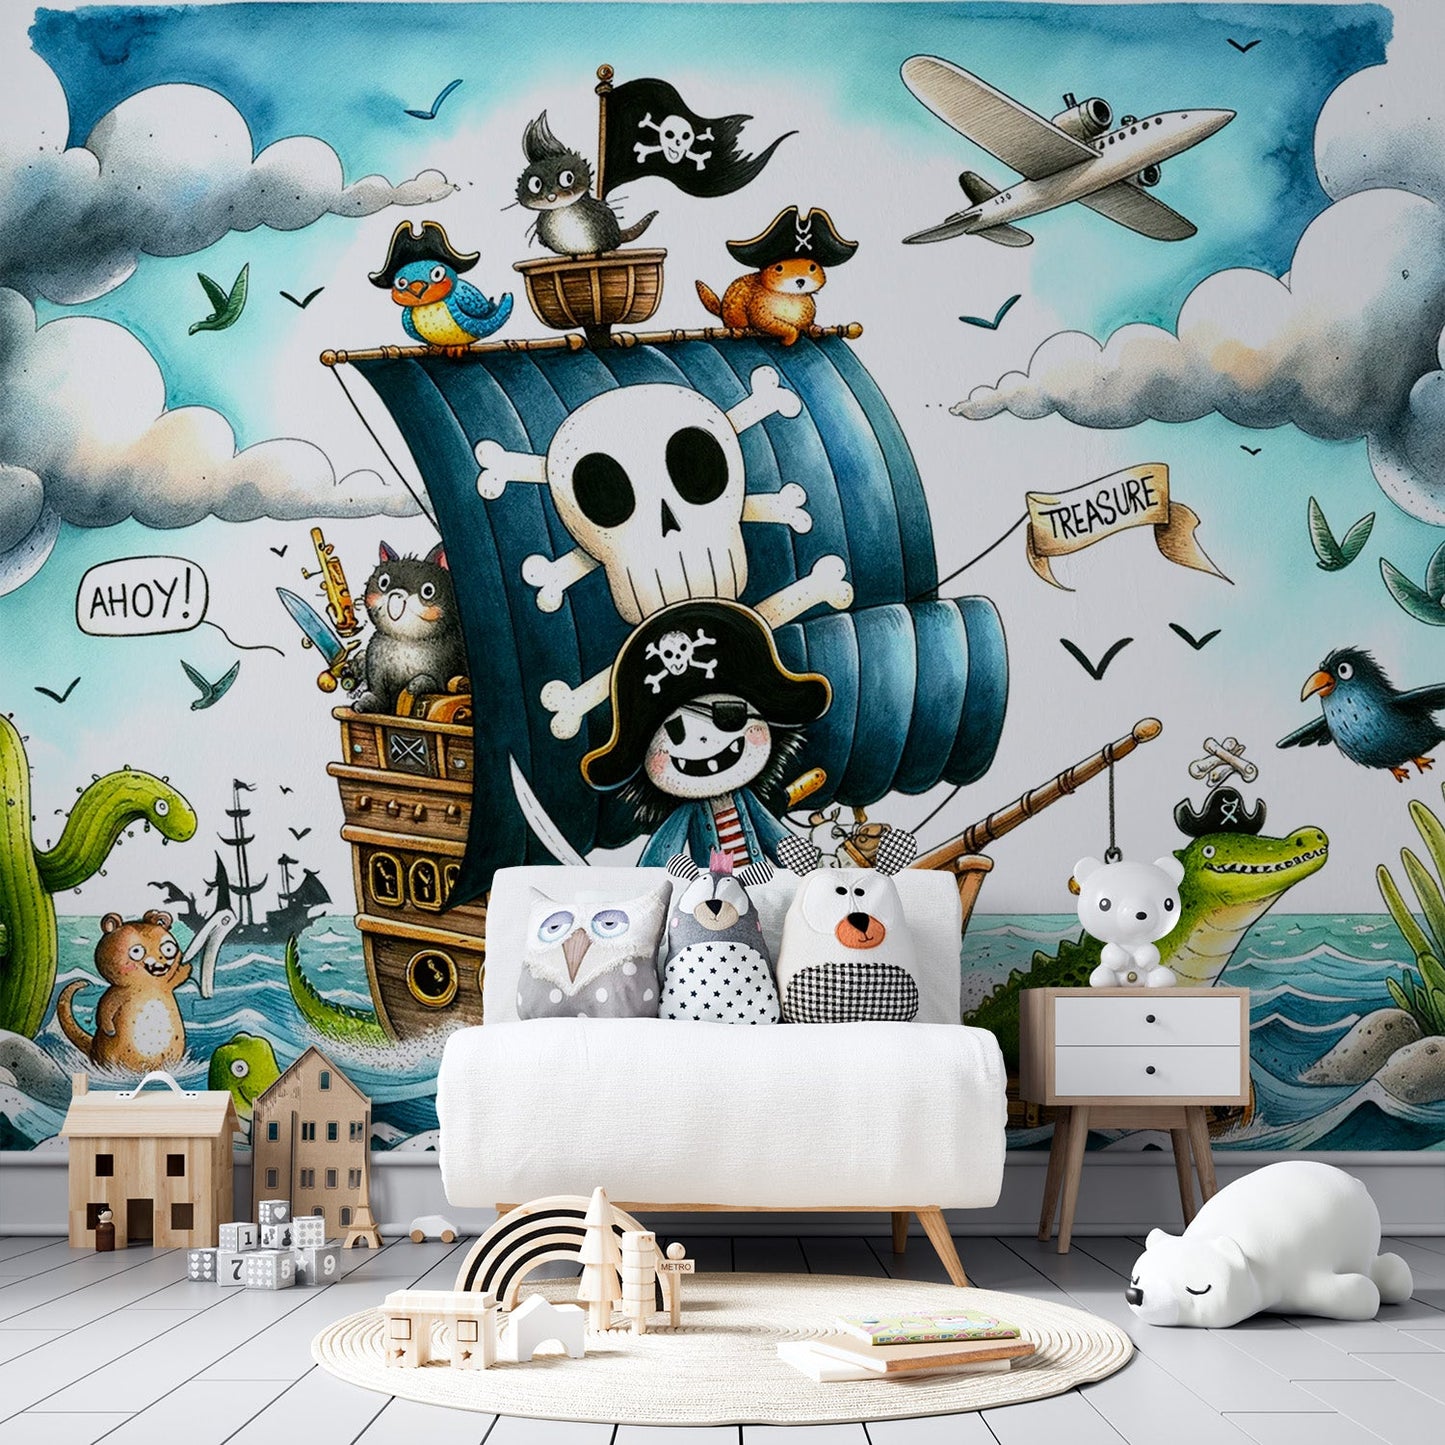 Pirate Wallpaper | Quest for the Treasure